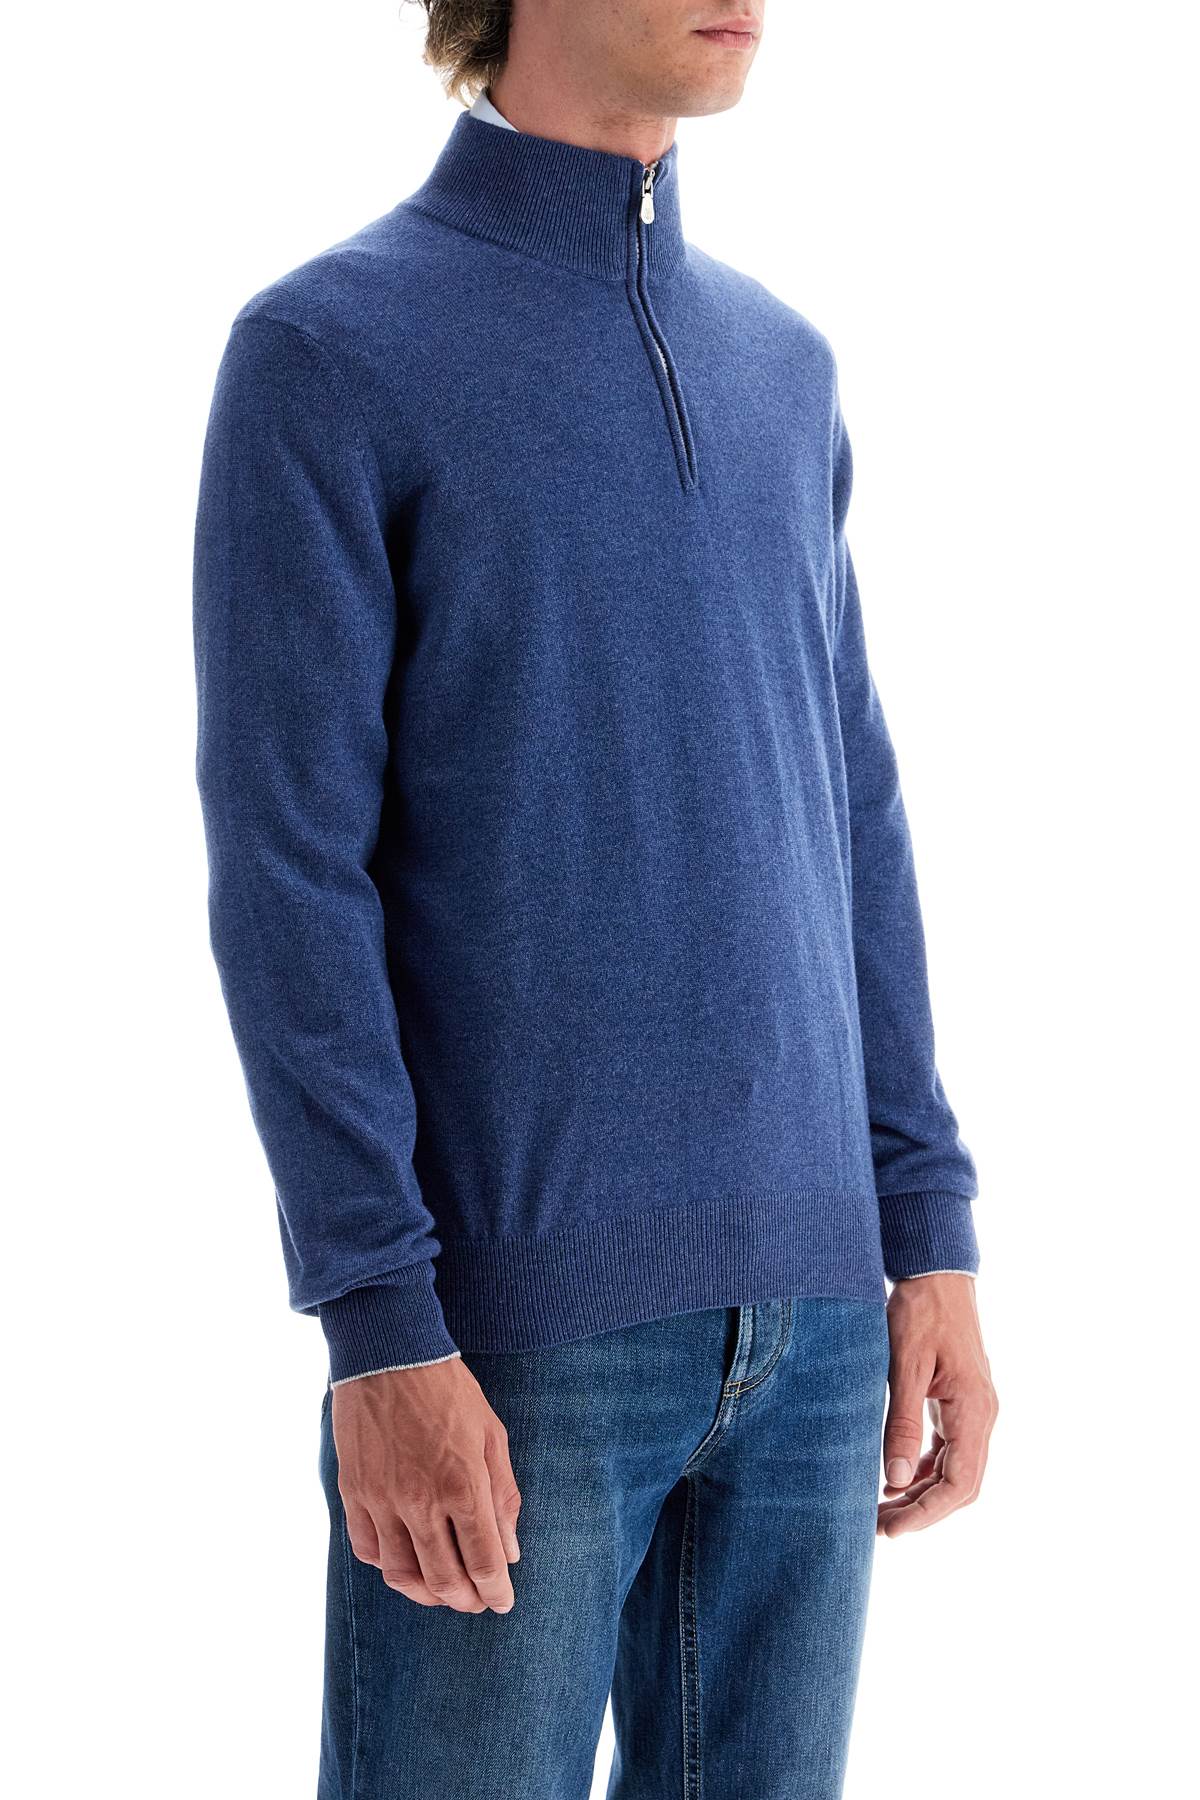 Brunello Cucinelli high-neck cashmere pullover sweater